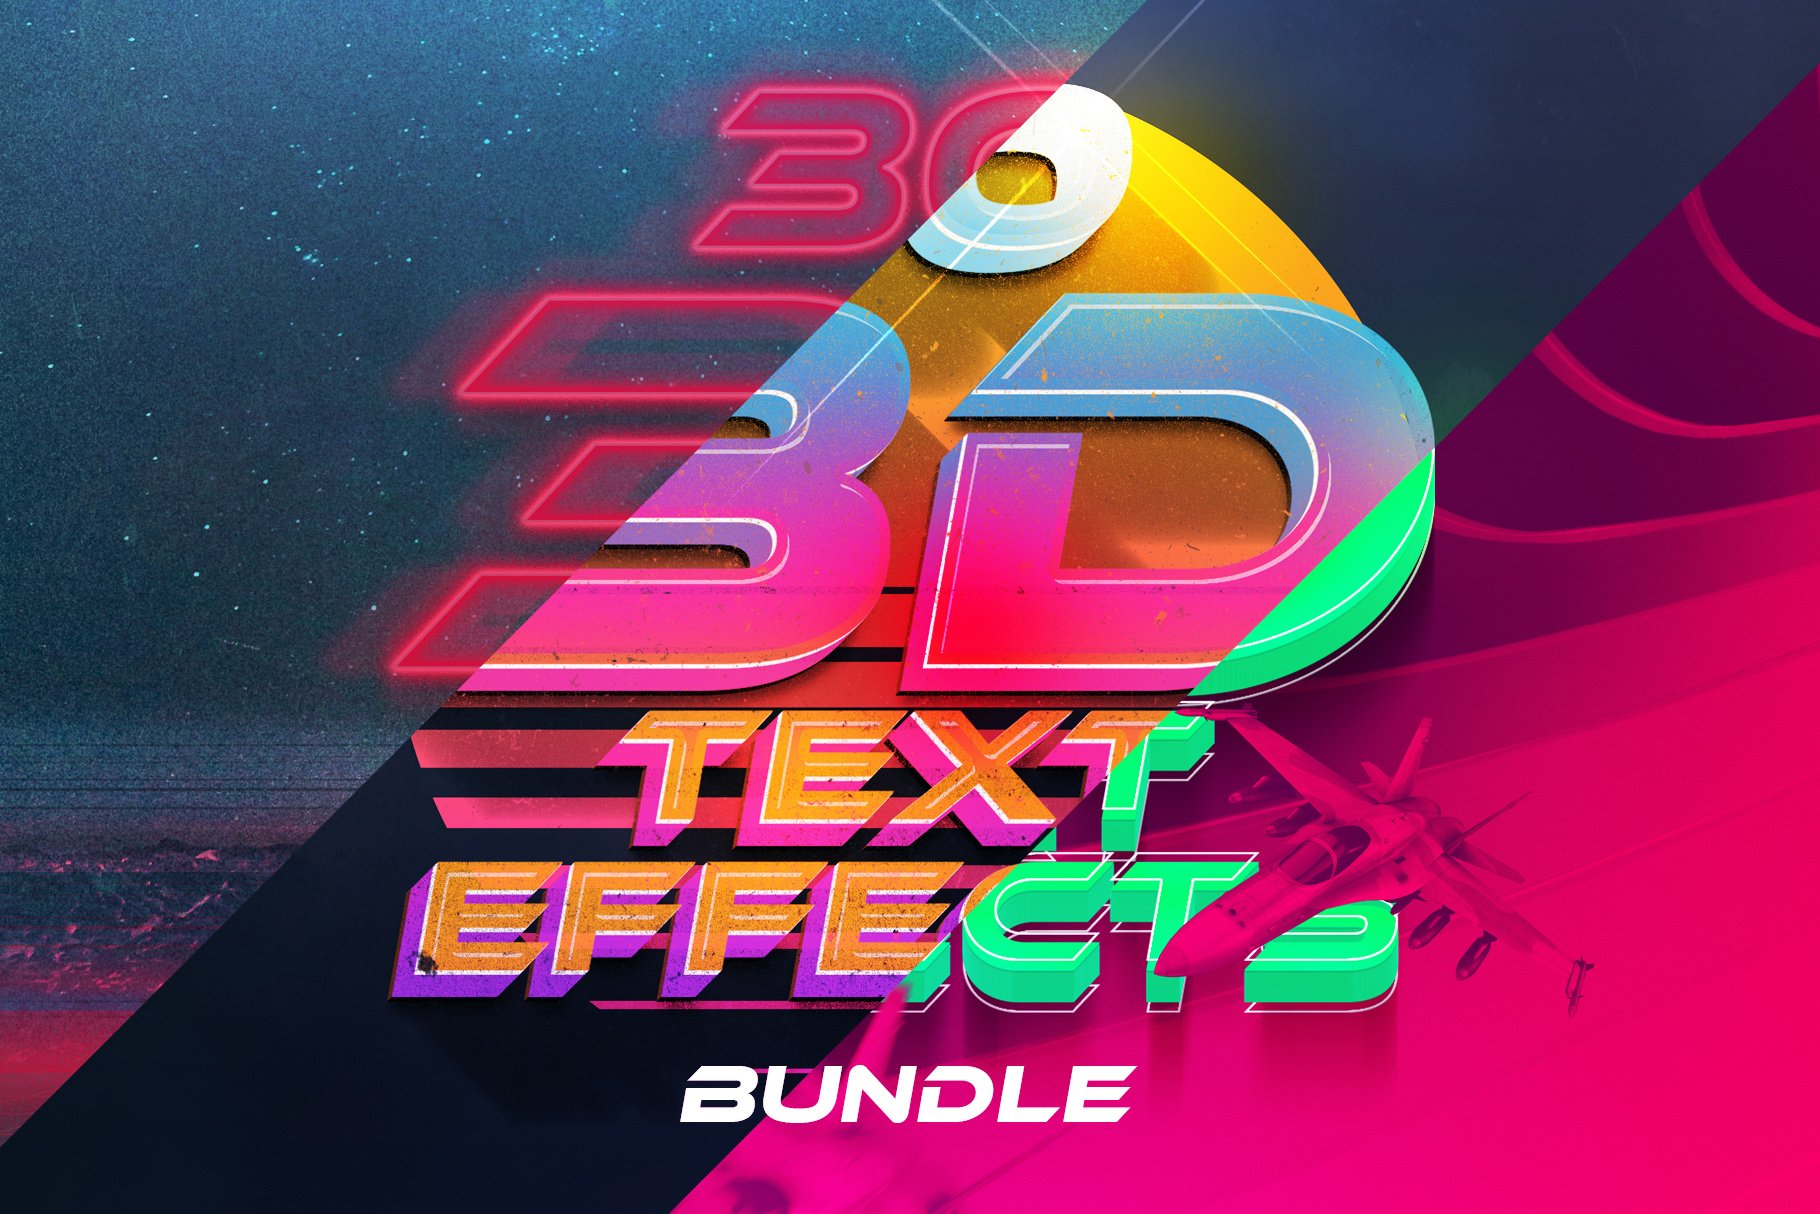 3D Text Effects Bundle Vol.4cover image.